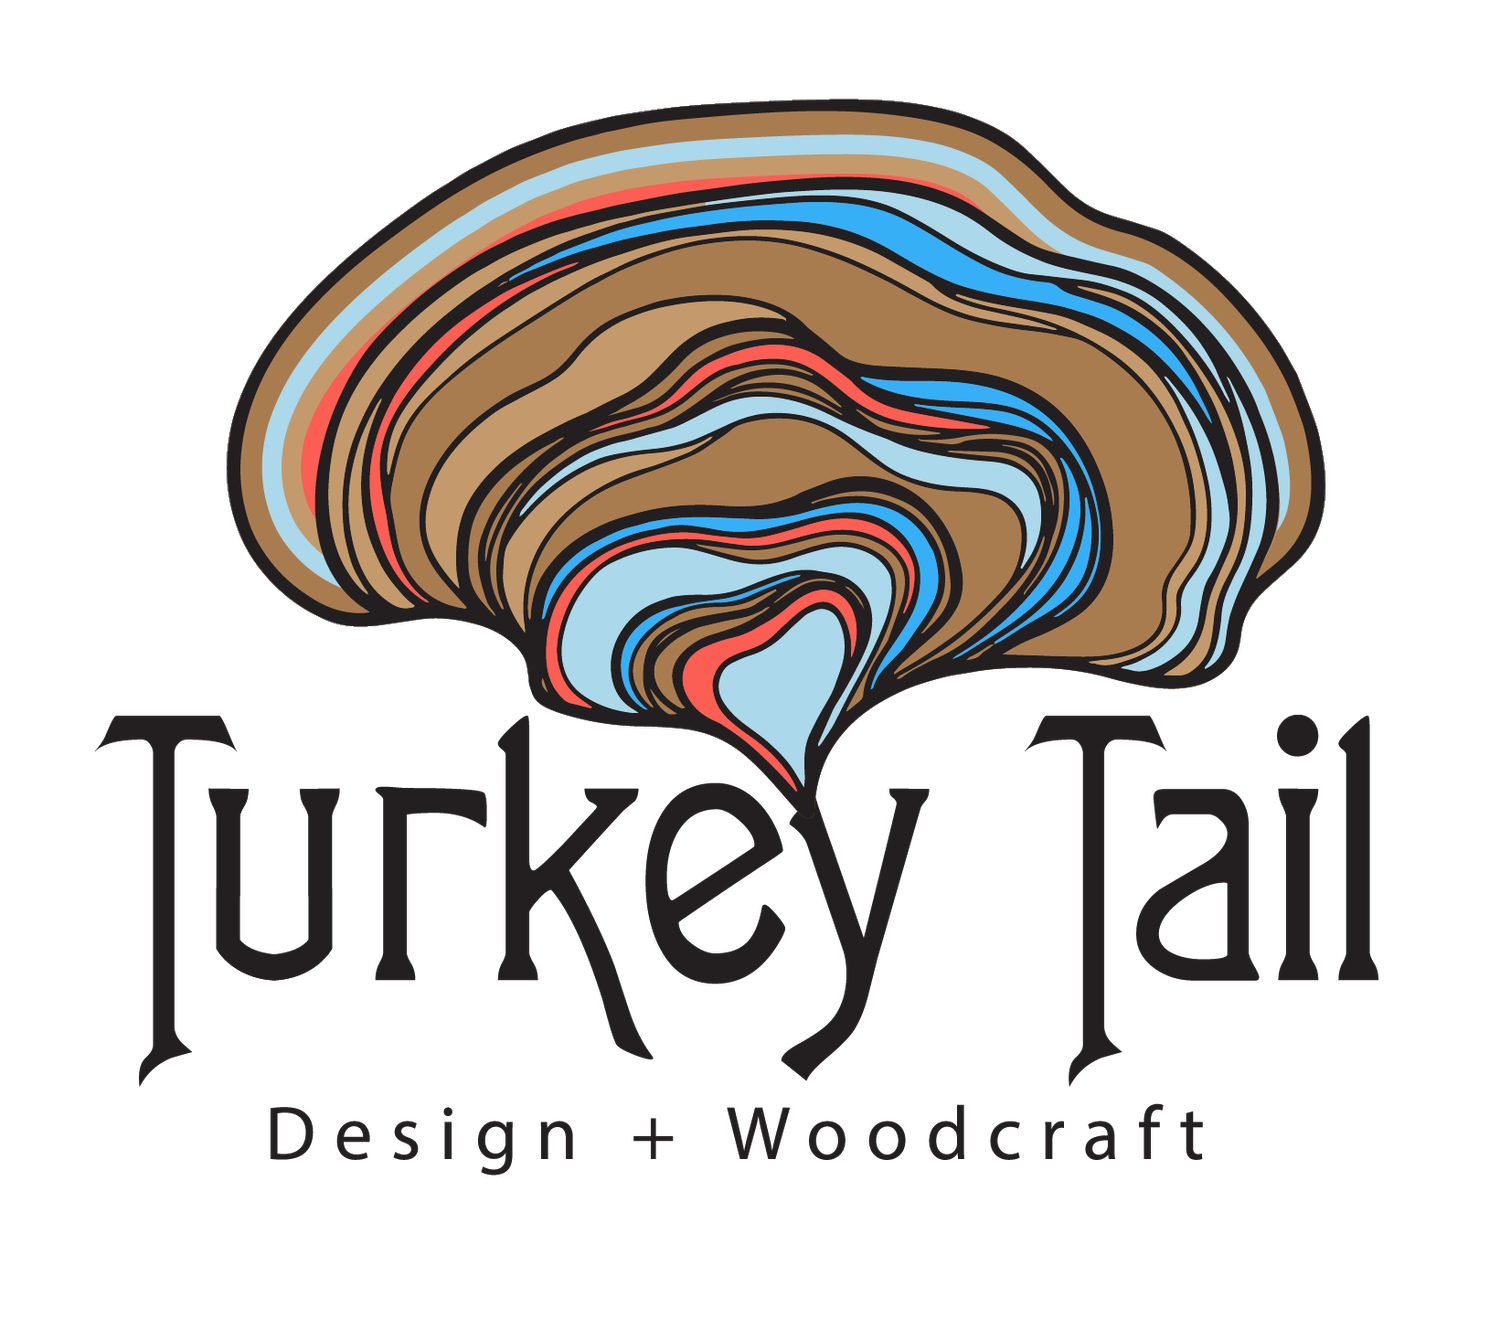 Turkey Tail Design + Woodcraft